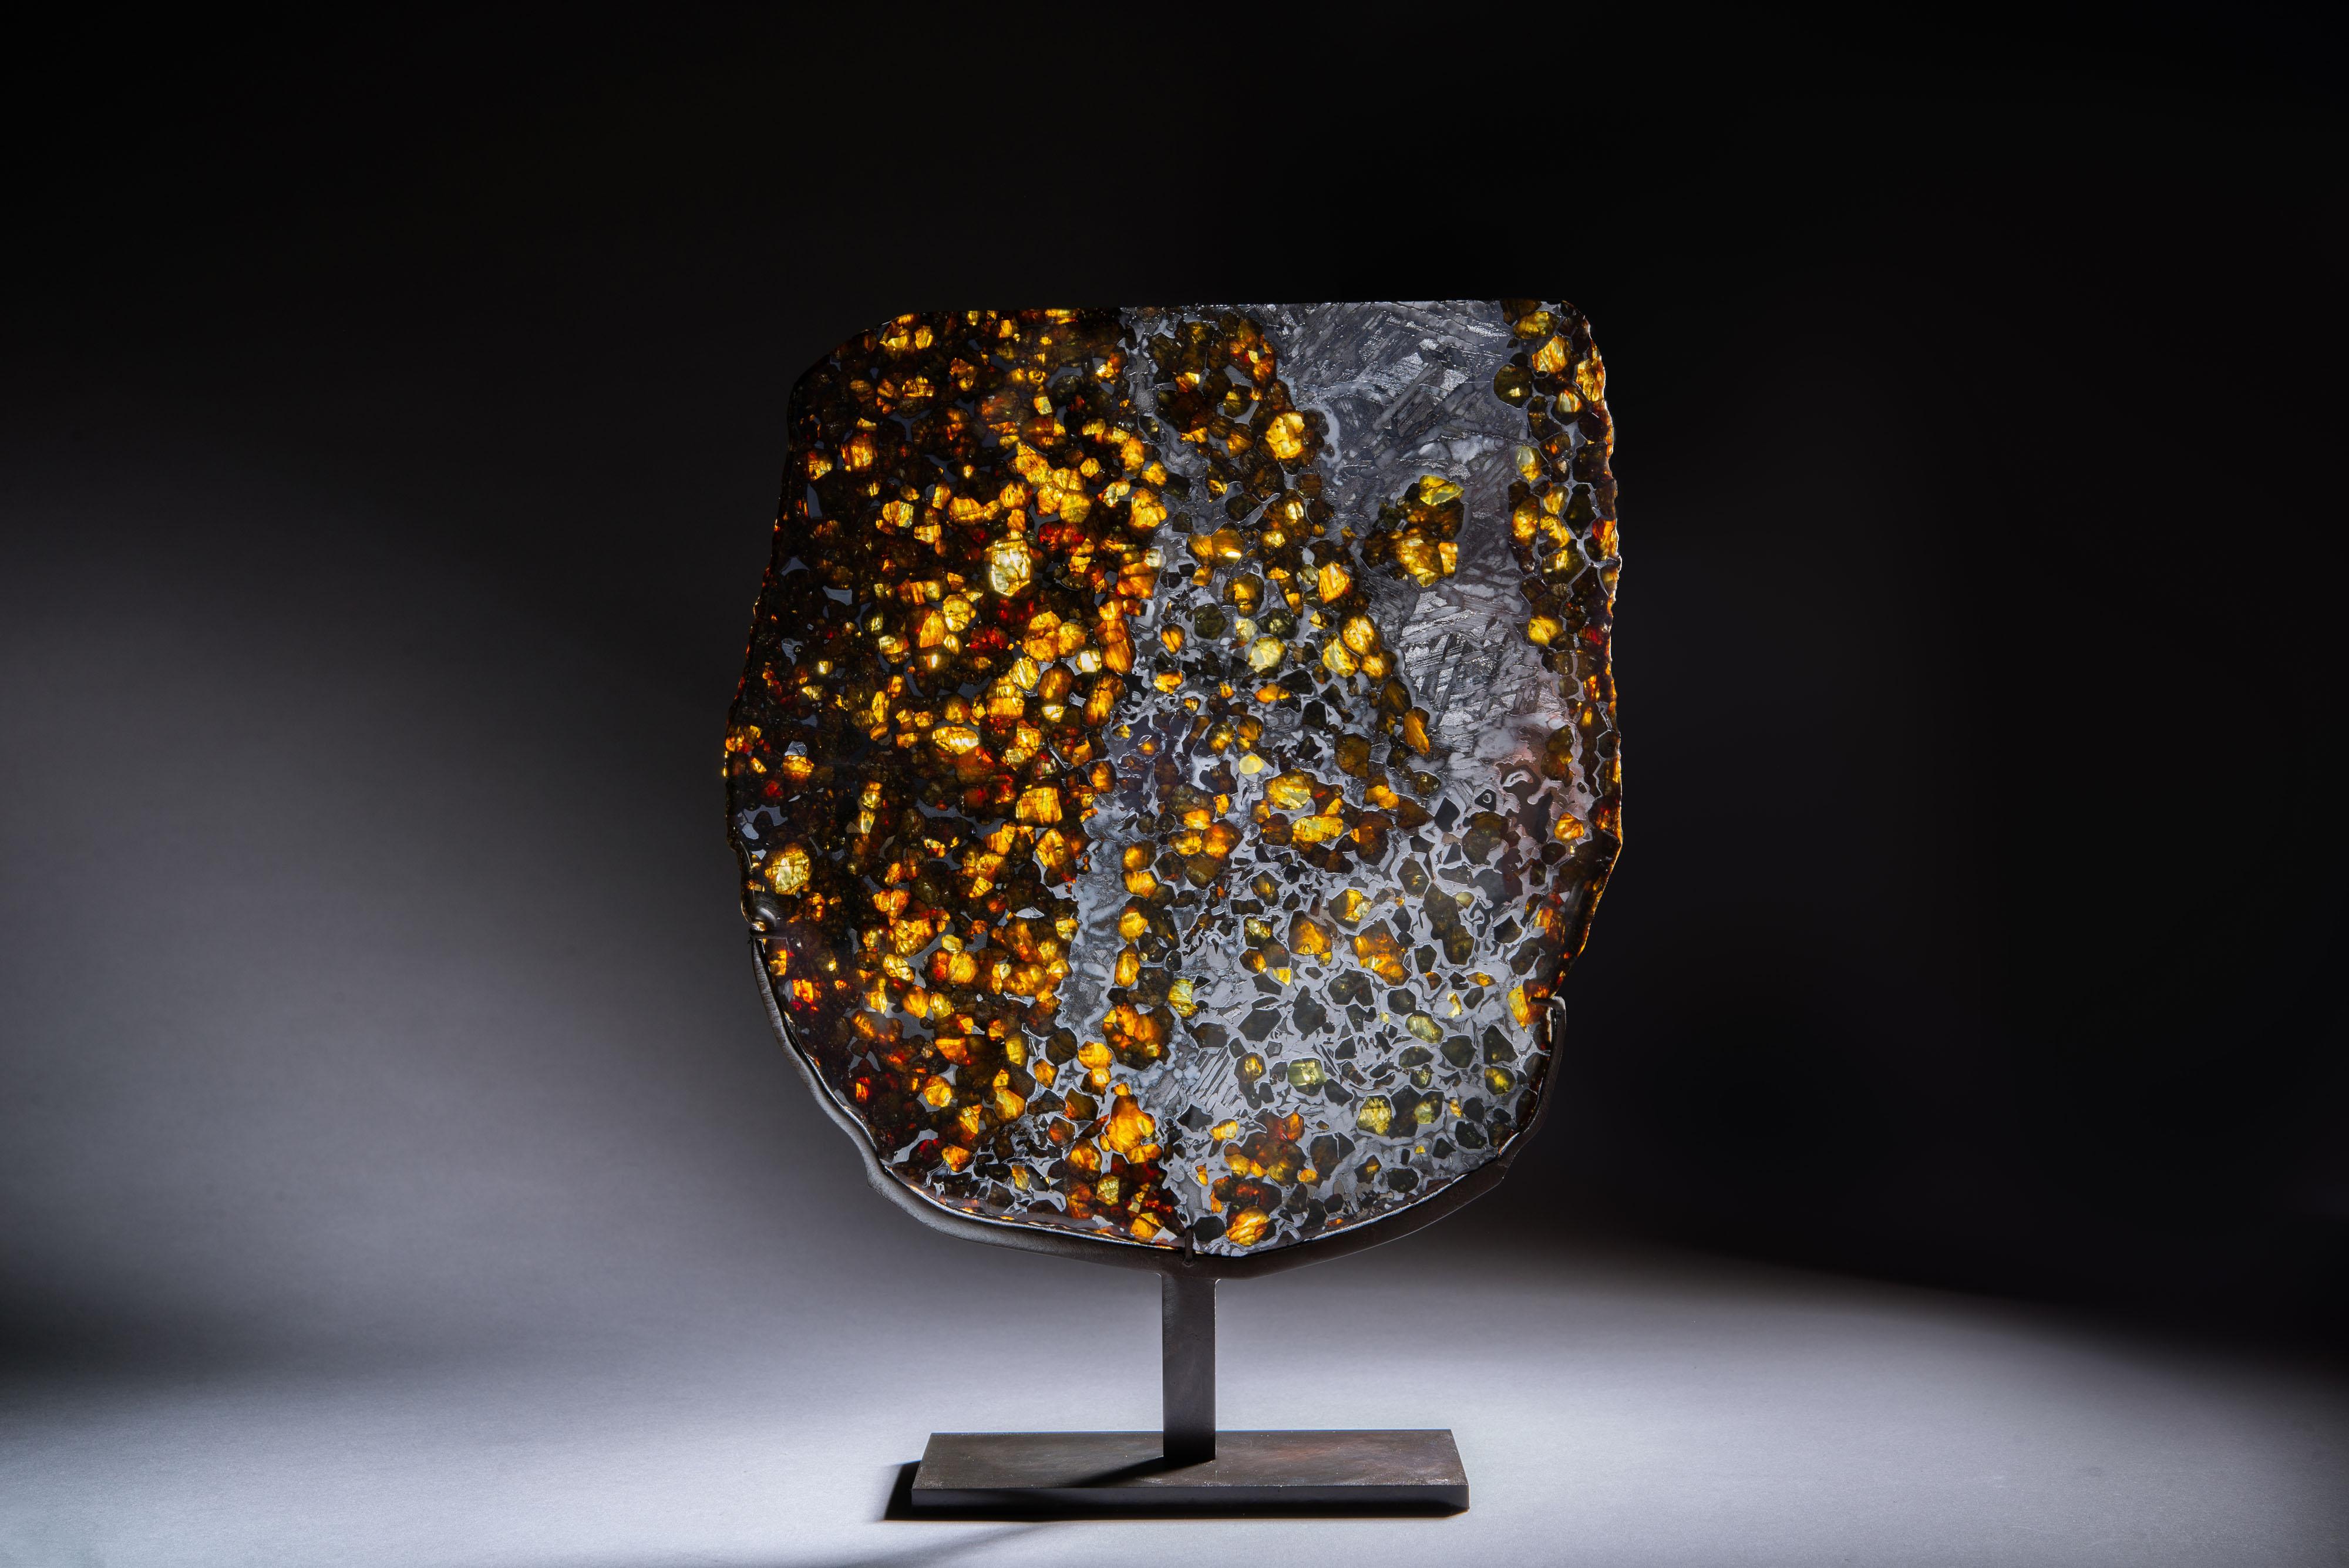 pallasite meteorite for sale